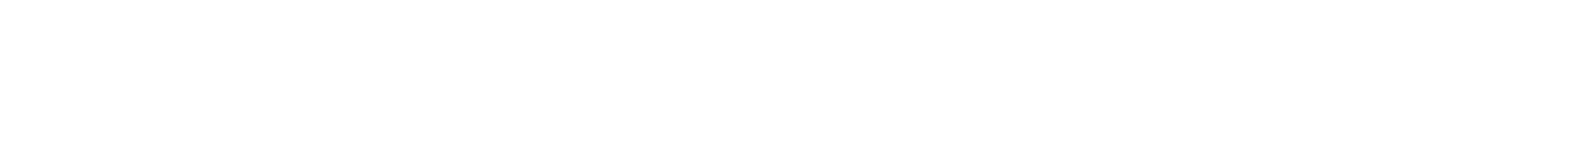 Lanvin Group logo grand pour les fonds sombres (PNG transparent)